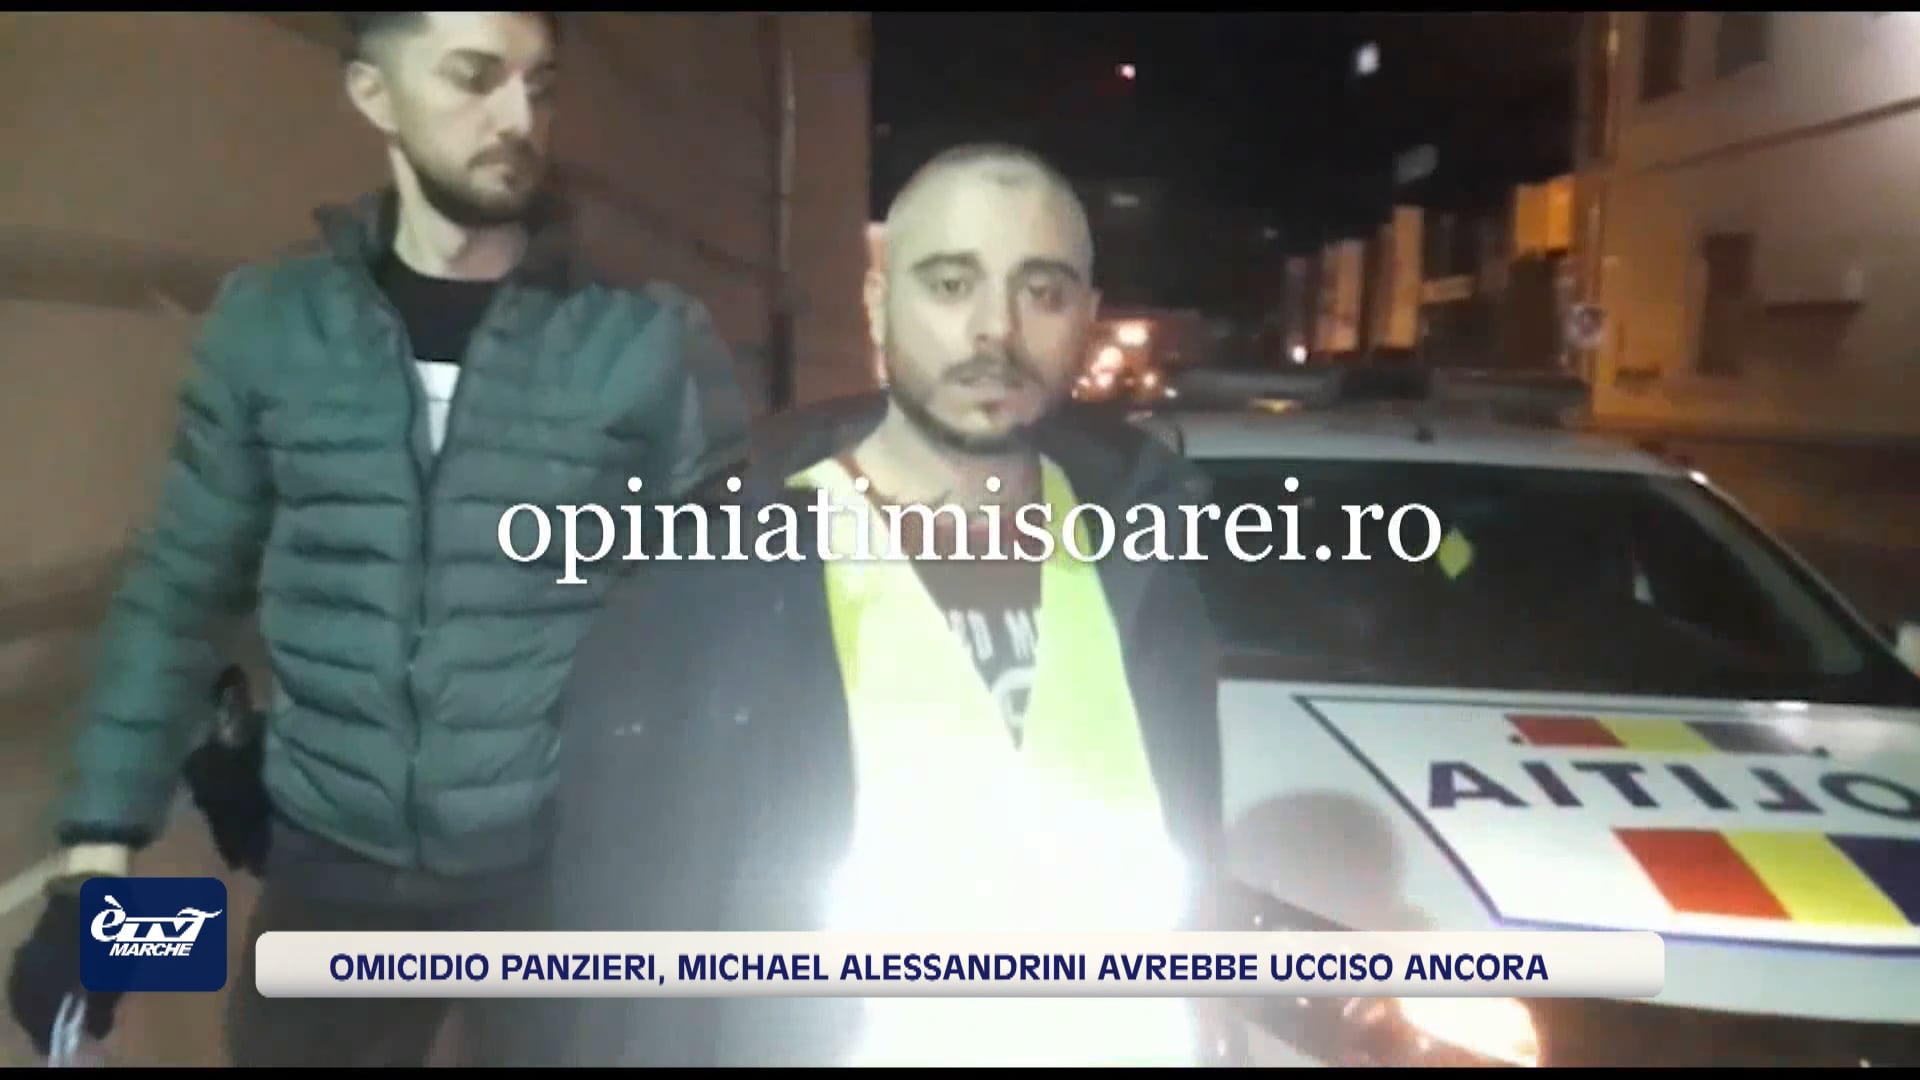 Omicidio Panzieri, Michael Alessandrini avrebbe ucciso ancora - VIDEO